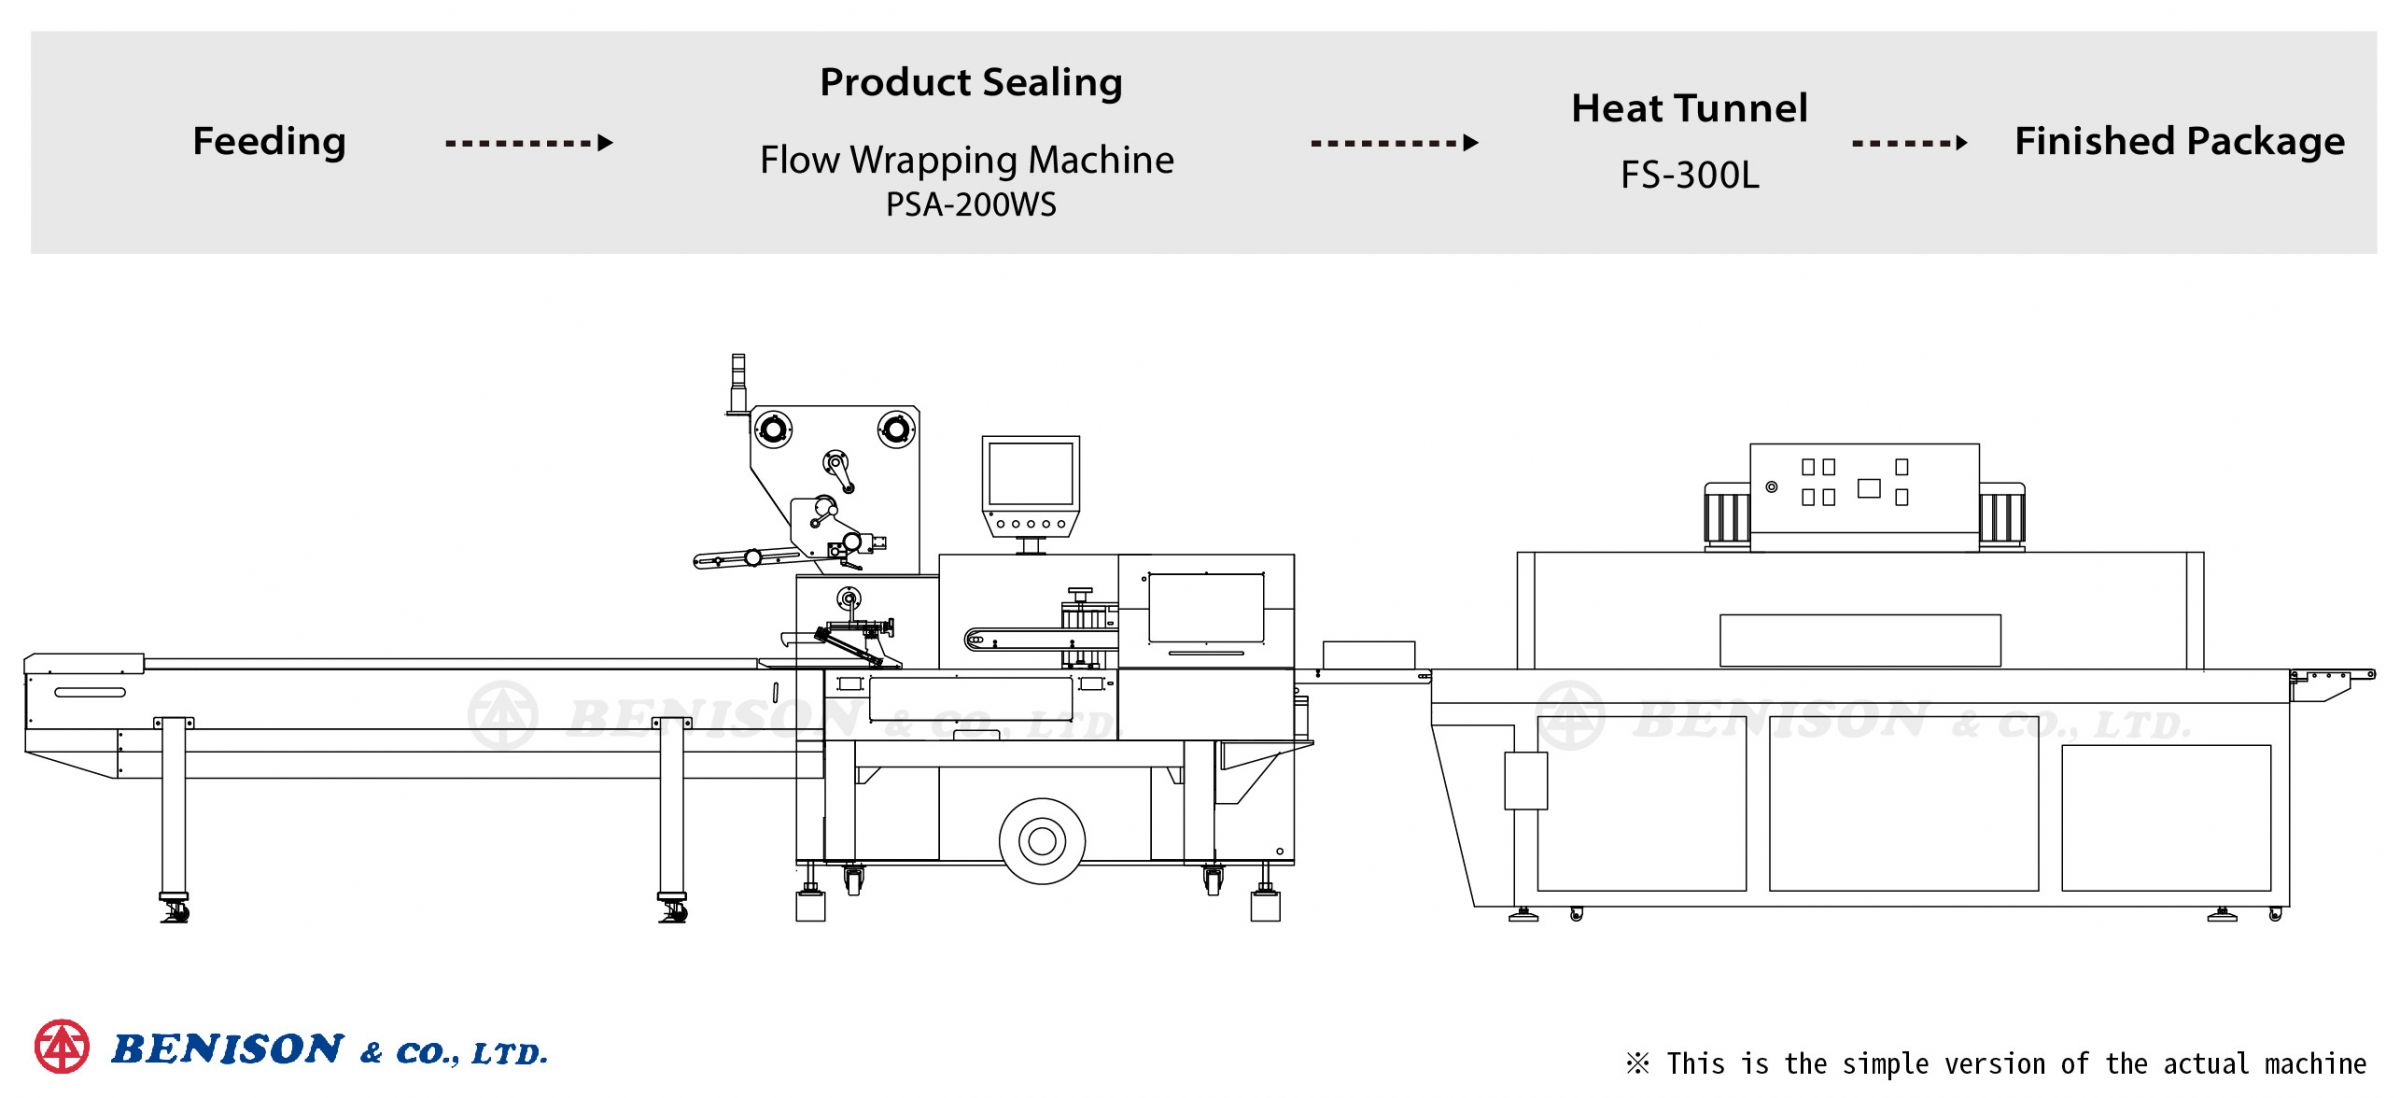 آلة تغليف PSA-200WS + نفق حراري FS-300L لغطاء المقبس من منتجات الحلول